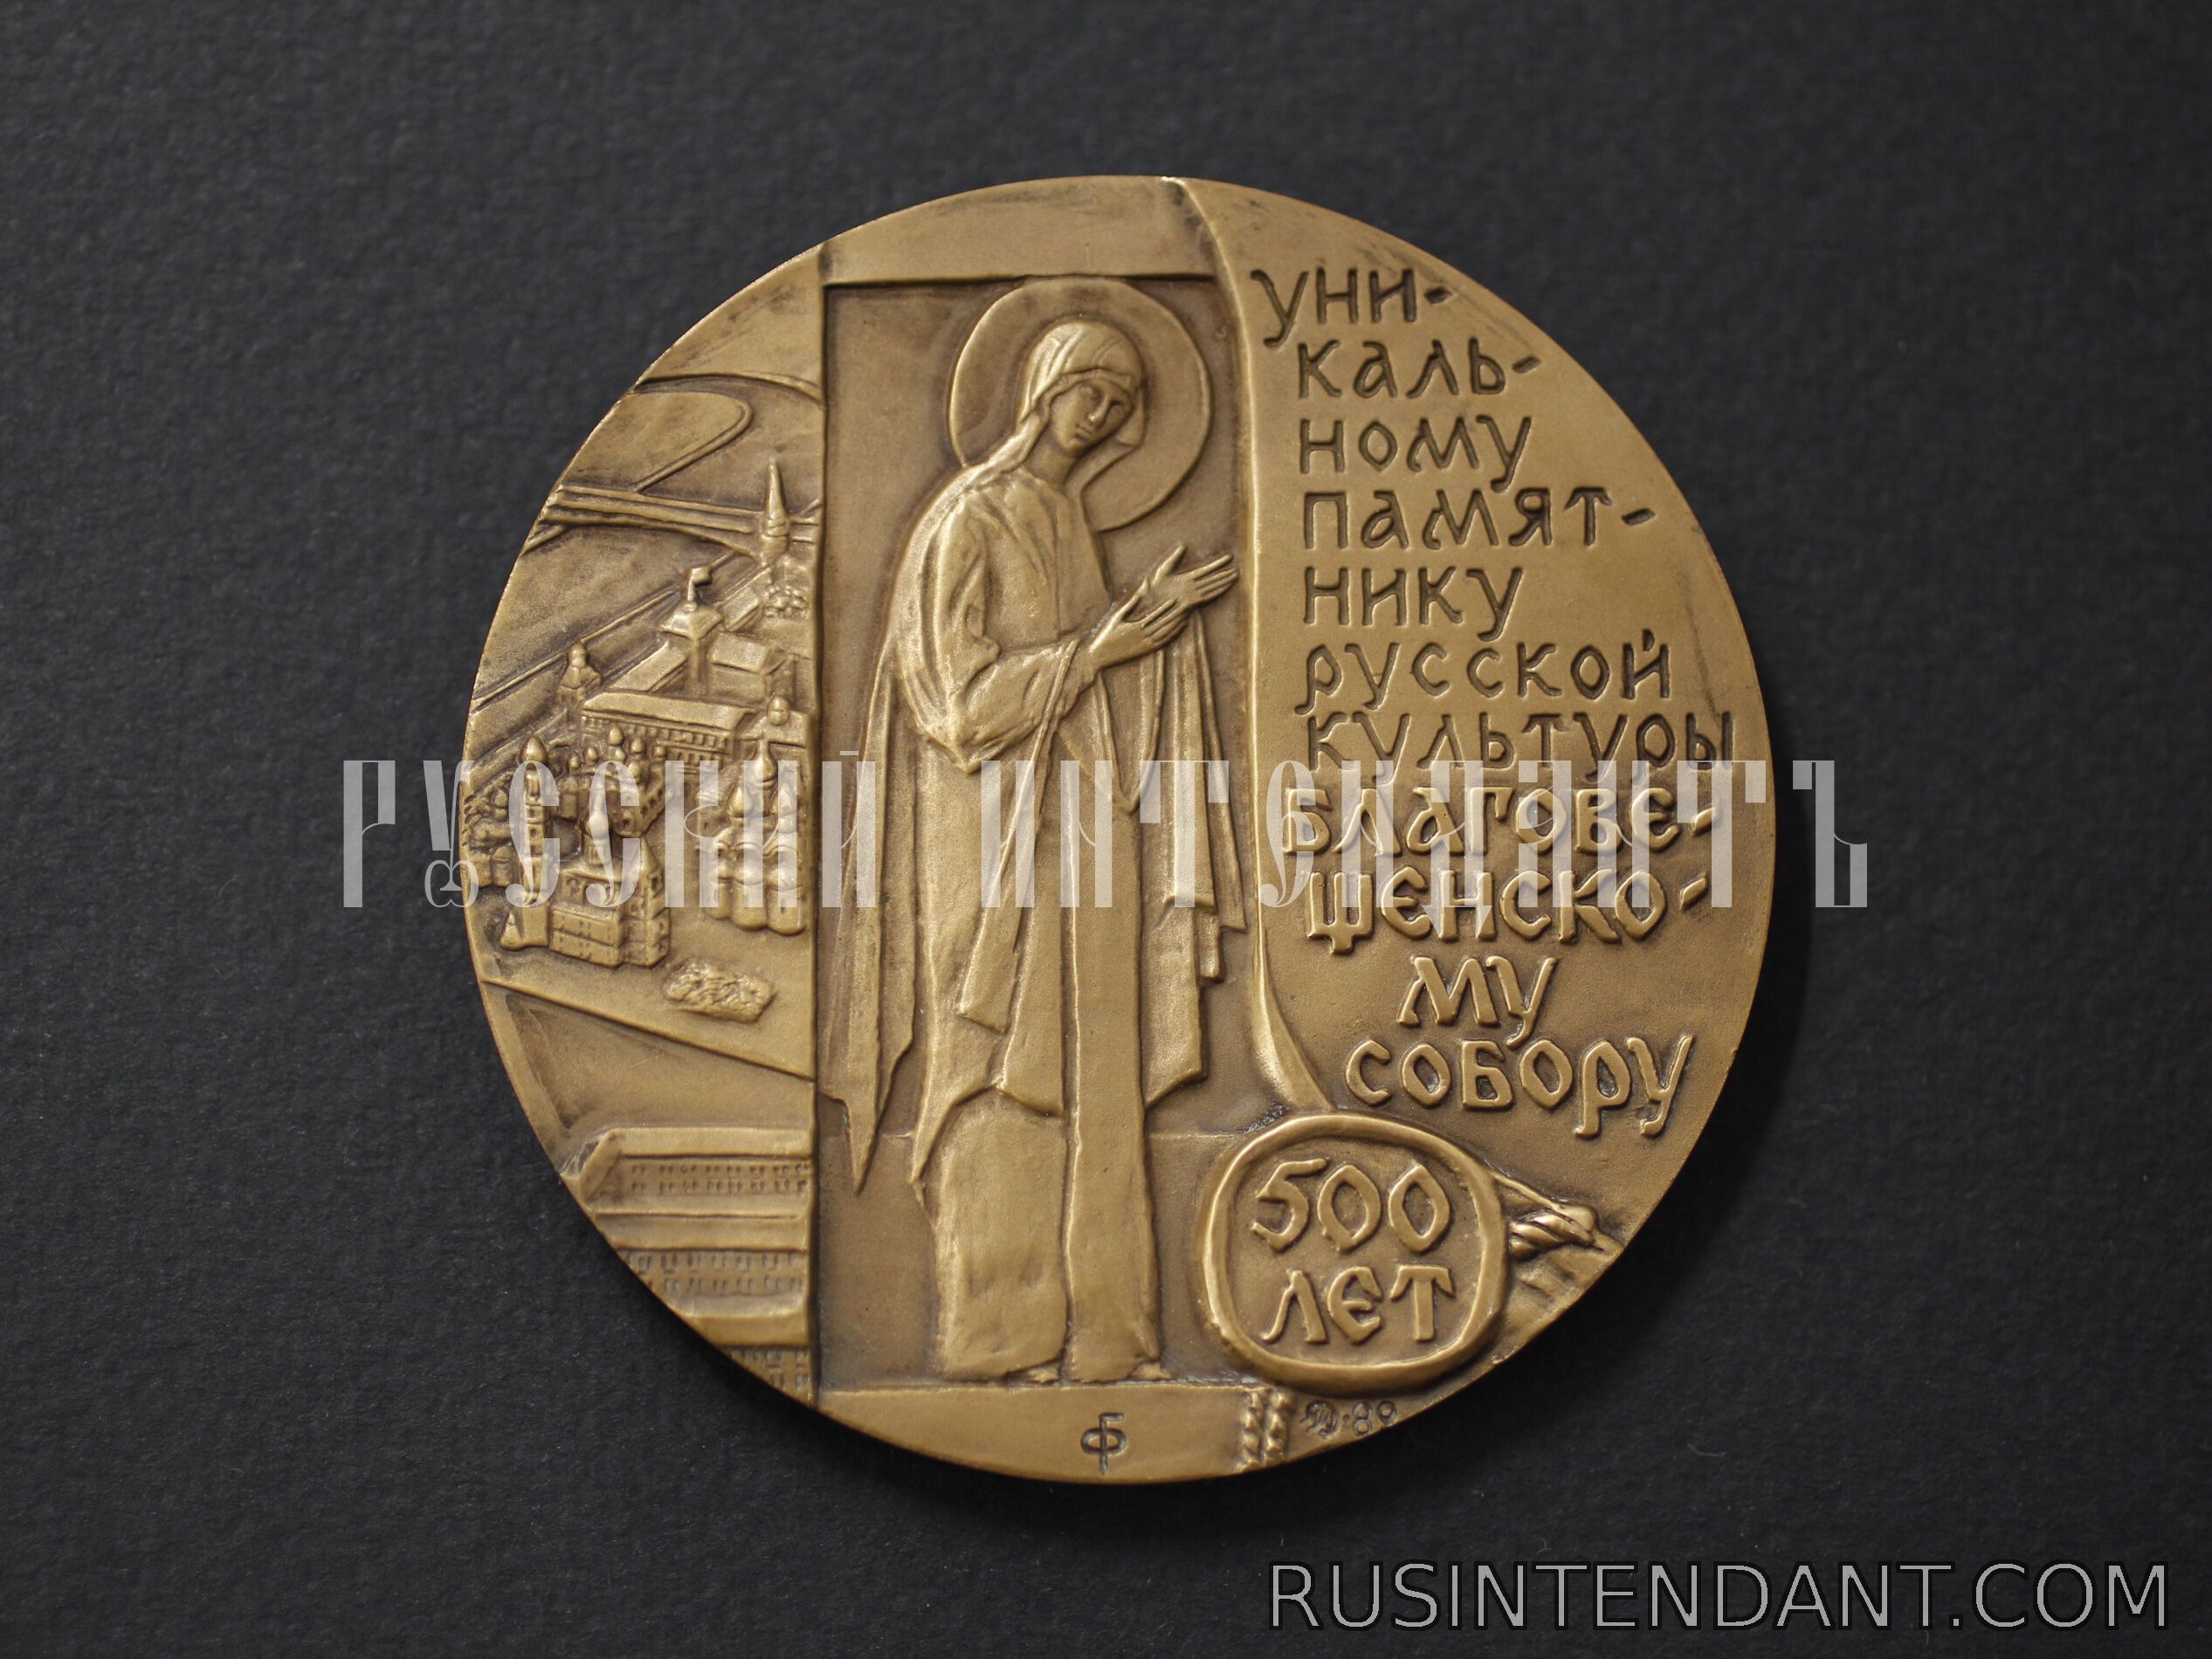 Фото 2: Настольная медаль «Благовещенский собор 500 лет» 